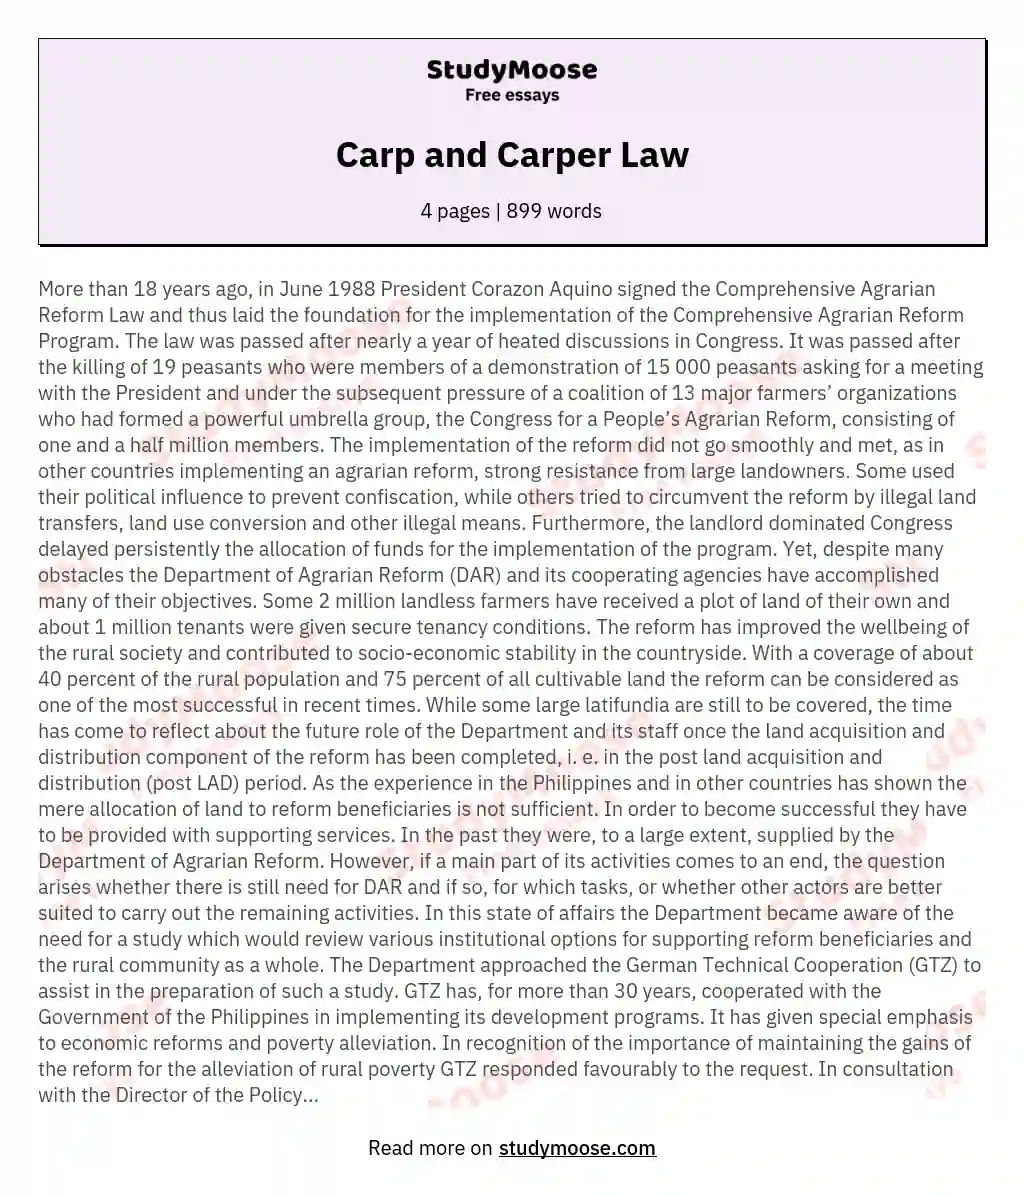 Carp and Carper Law essay